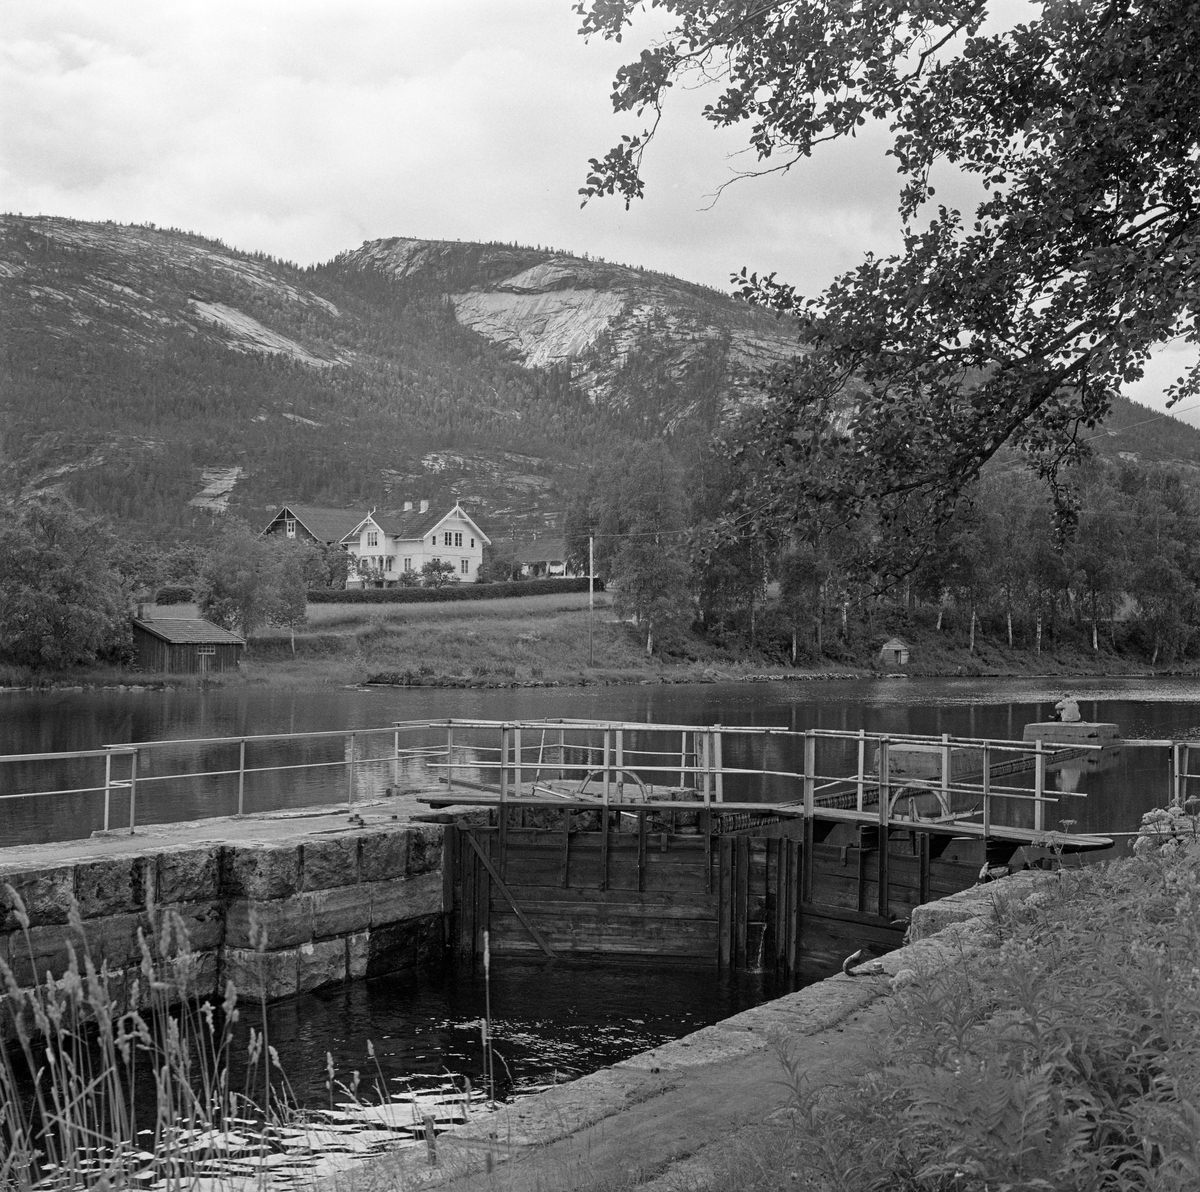 Sluseanlegg. Storstraum sluser ved Vråvatn, Kviteseid kommune, Telemark. Tømmeret ble slept over Vråvatn i ringbommer, sluppet løst gjennom Storstraum for igjen å bli samlet i ringbommer for videre transport over Nisser.